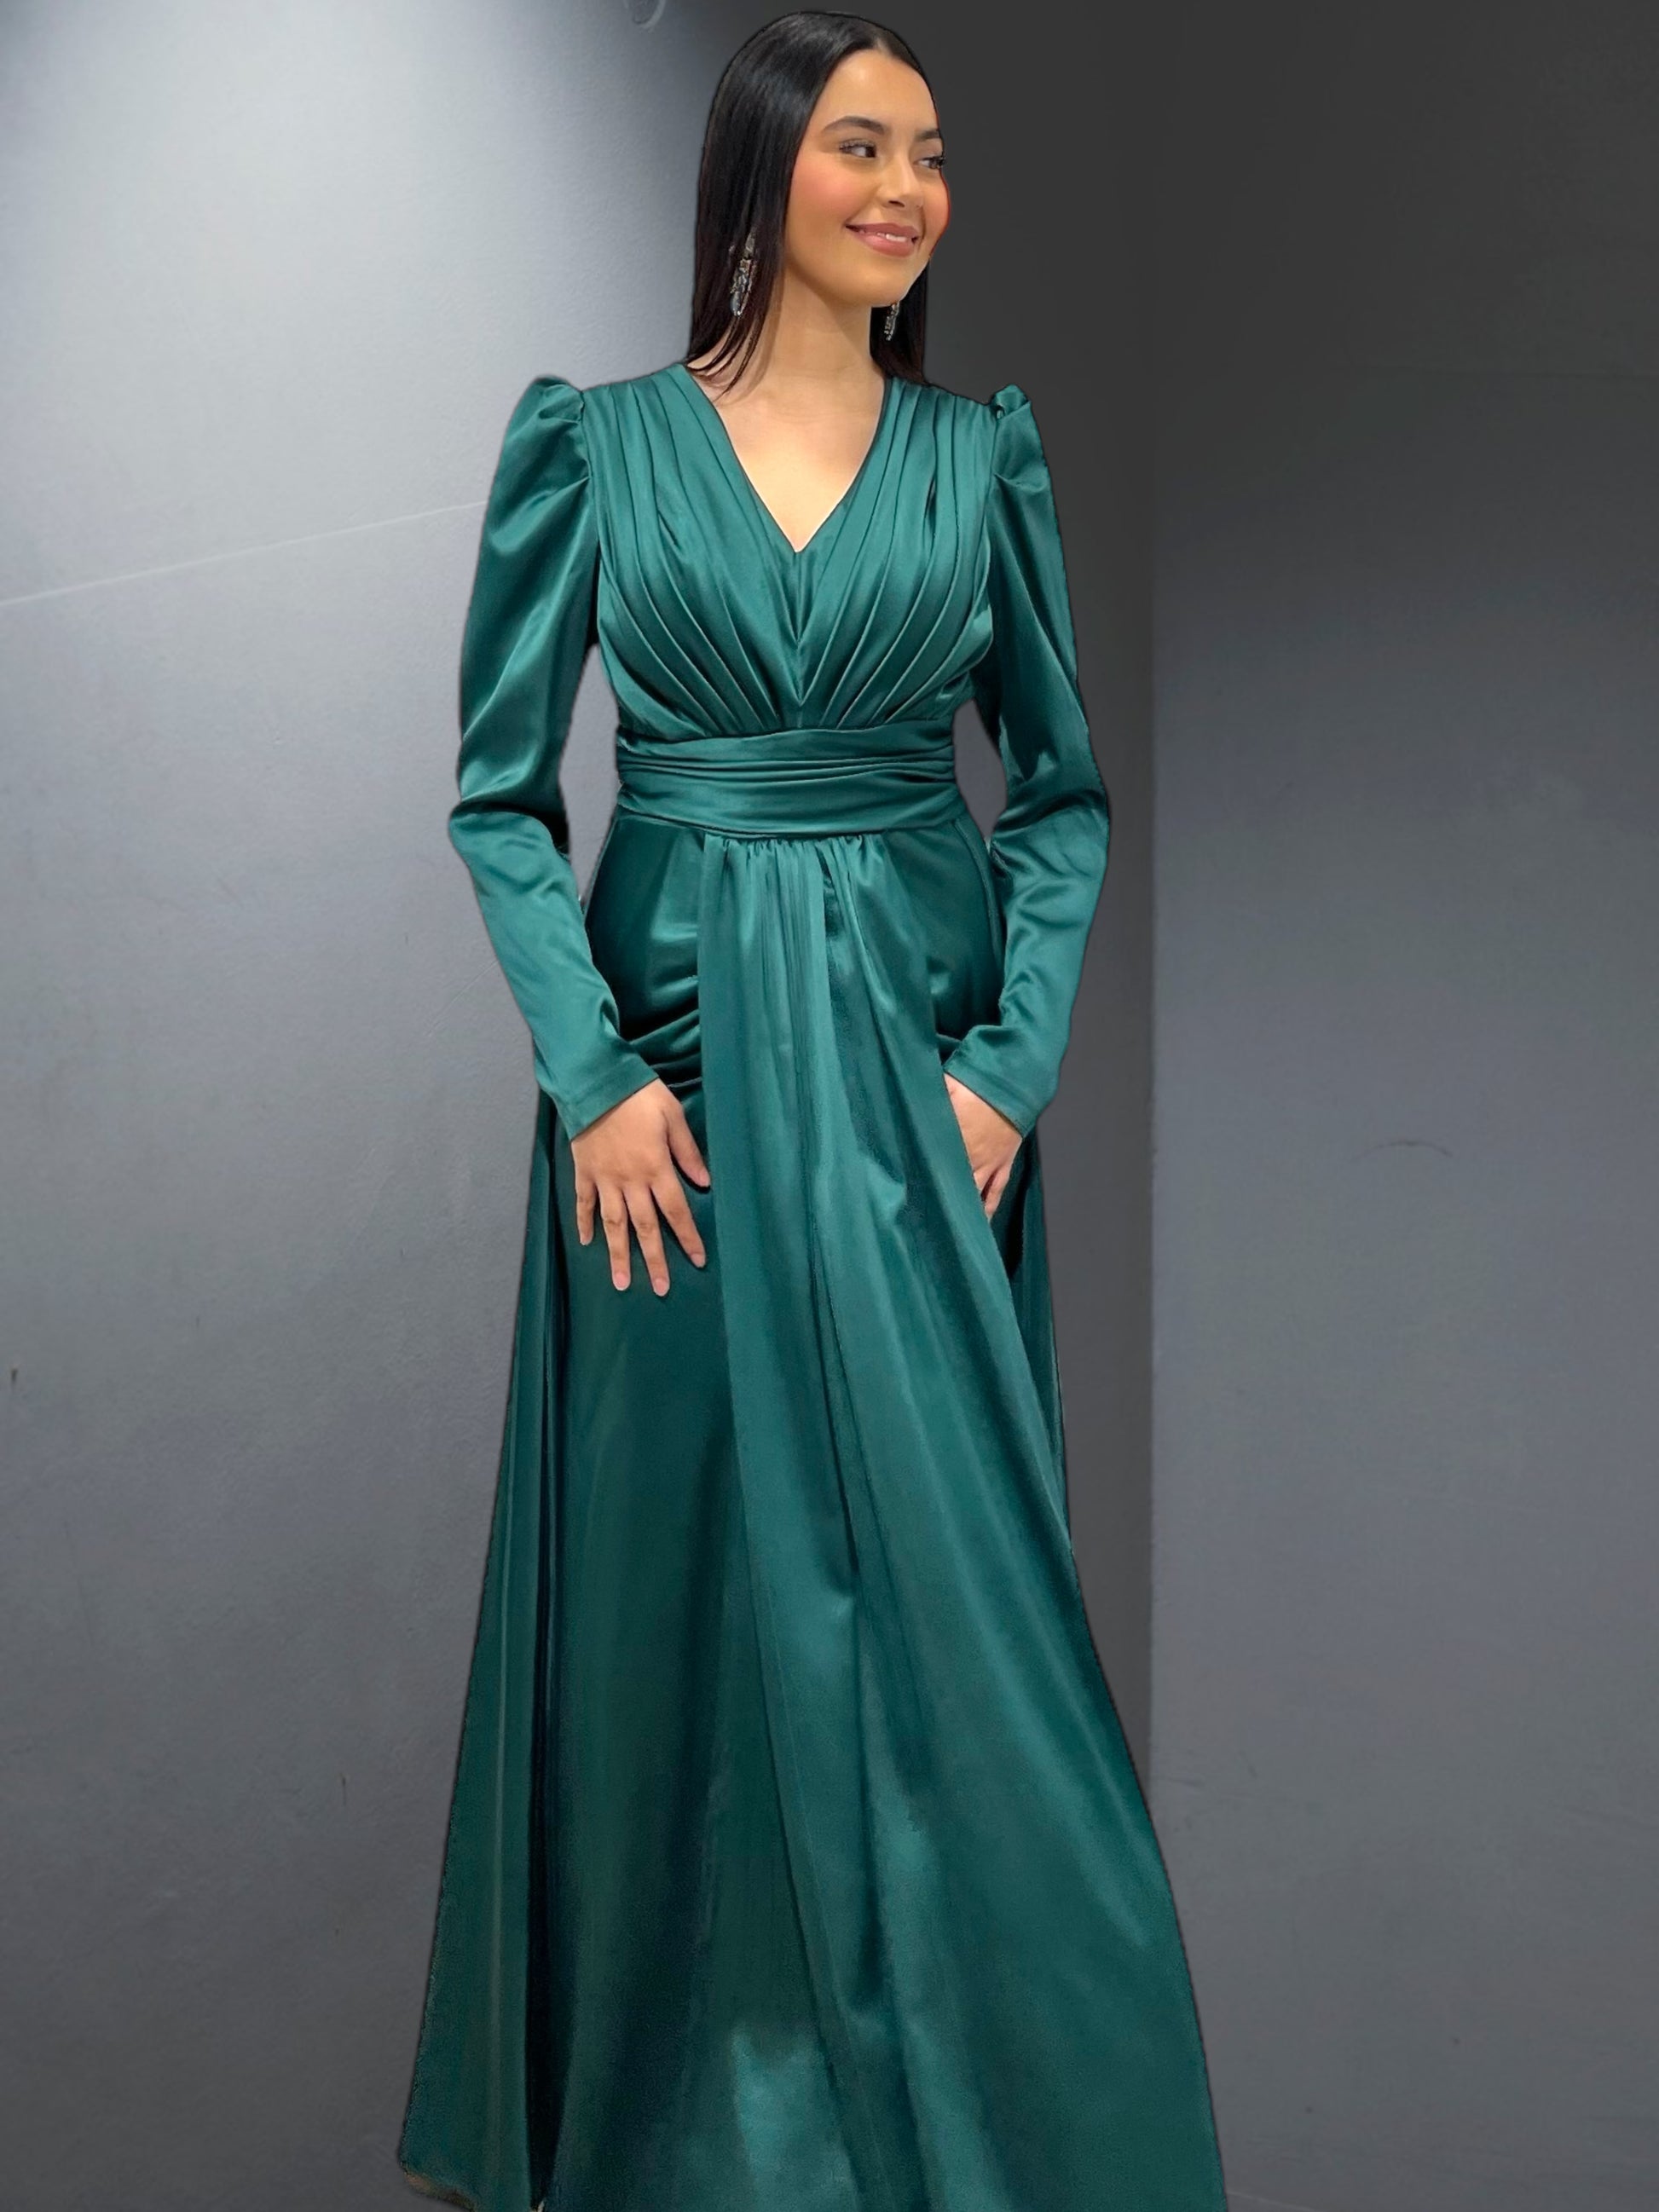 La robe de soirée "Arles" est une création raffinée et élégante - AmirCouture 